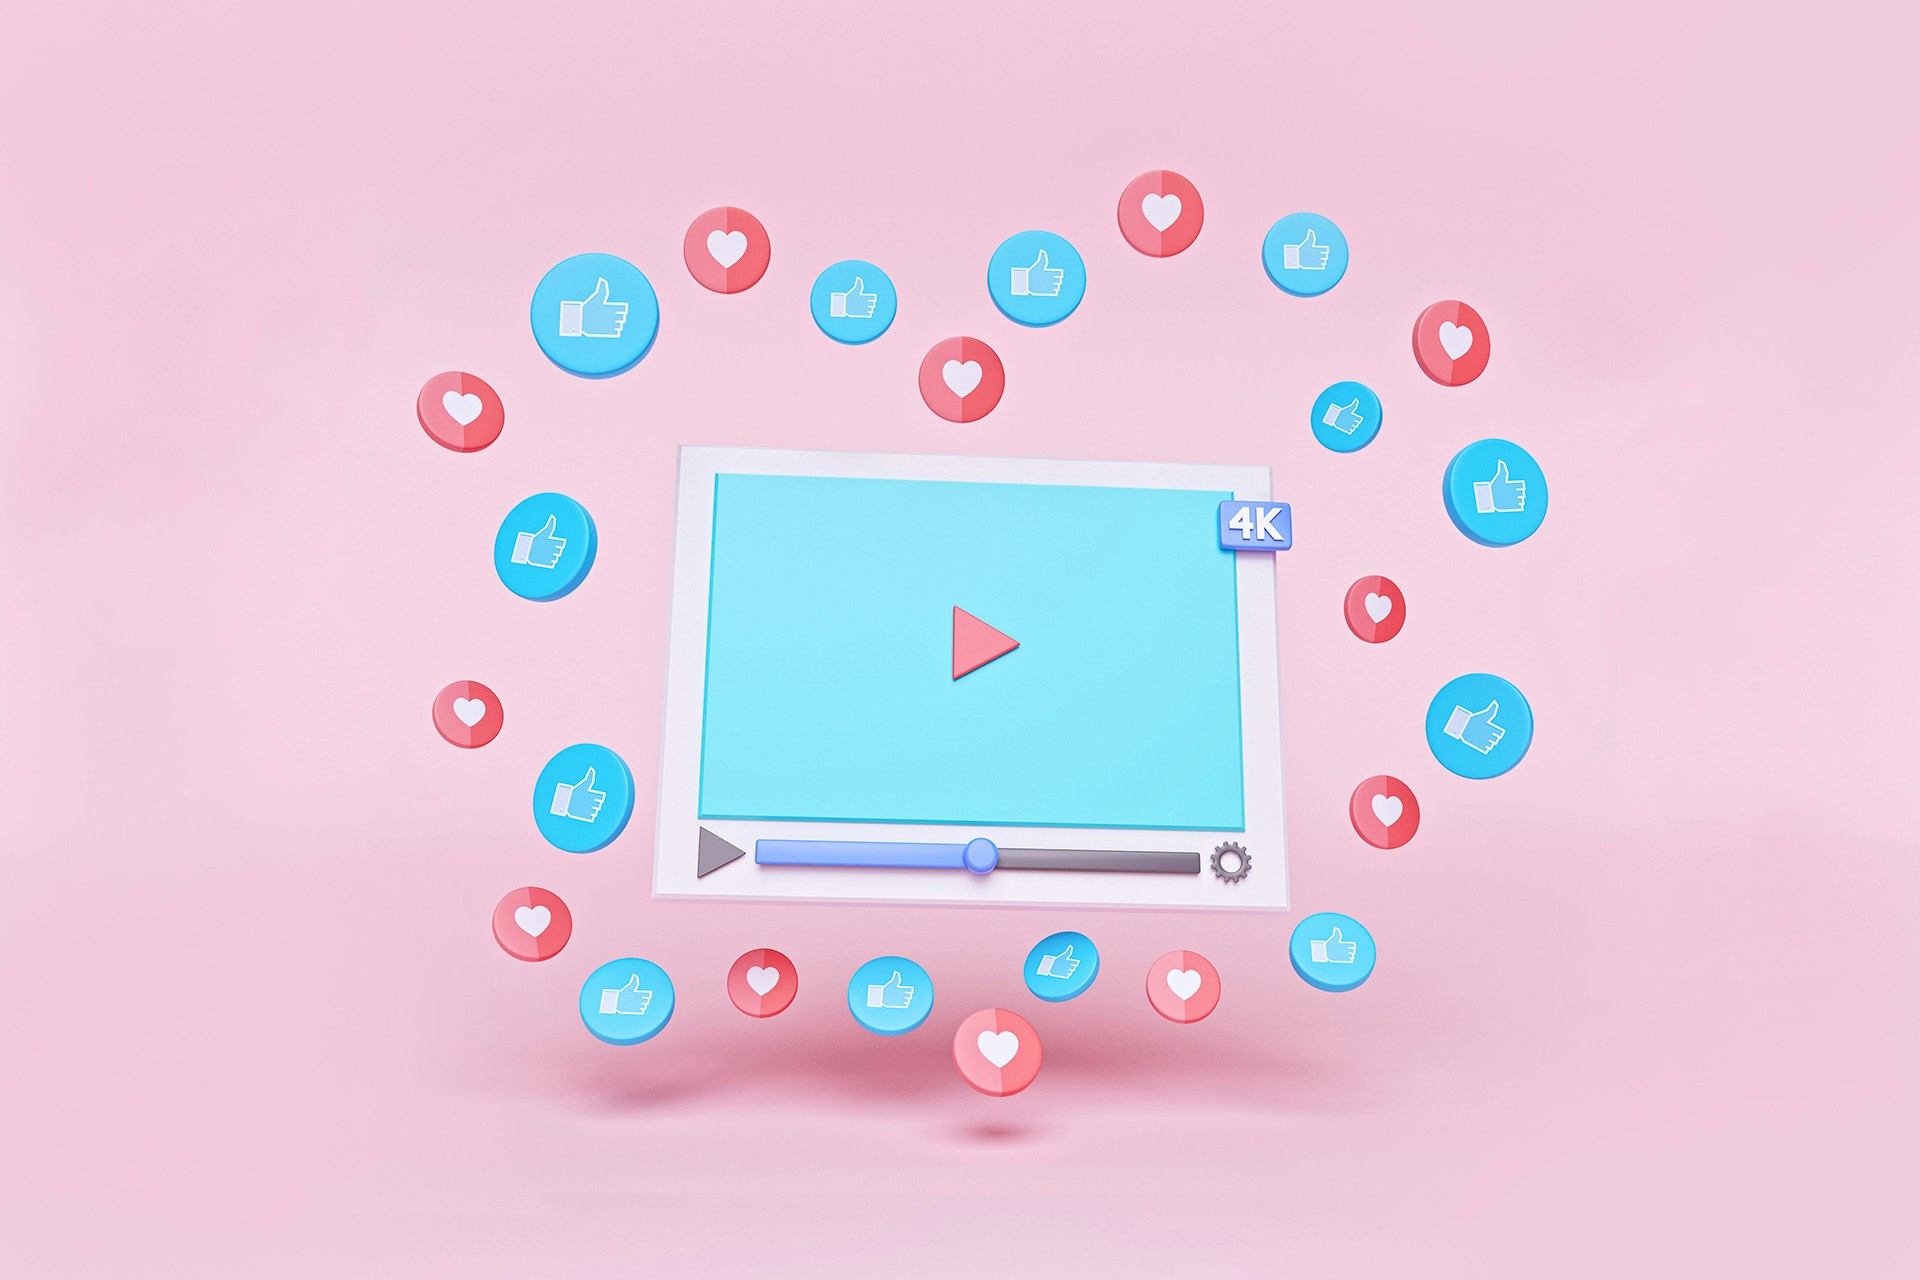 Une icône d'un lecteur vidéo YouTube avec des icônes de cœurs et de "j'aime" flottant autour de la vidéo en forme de cœur.